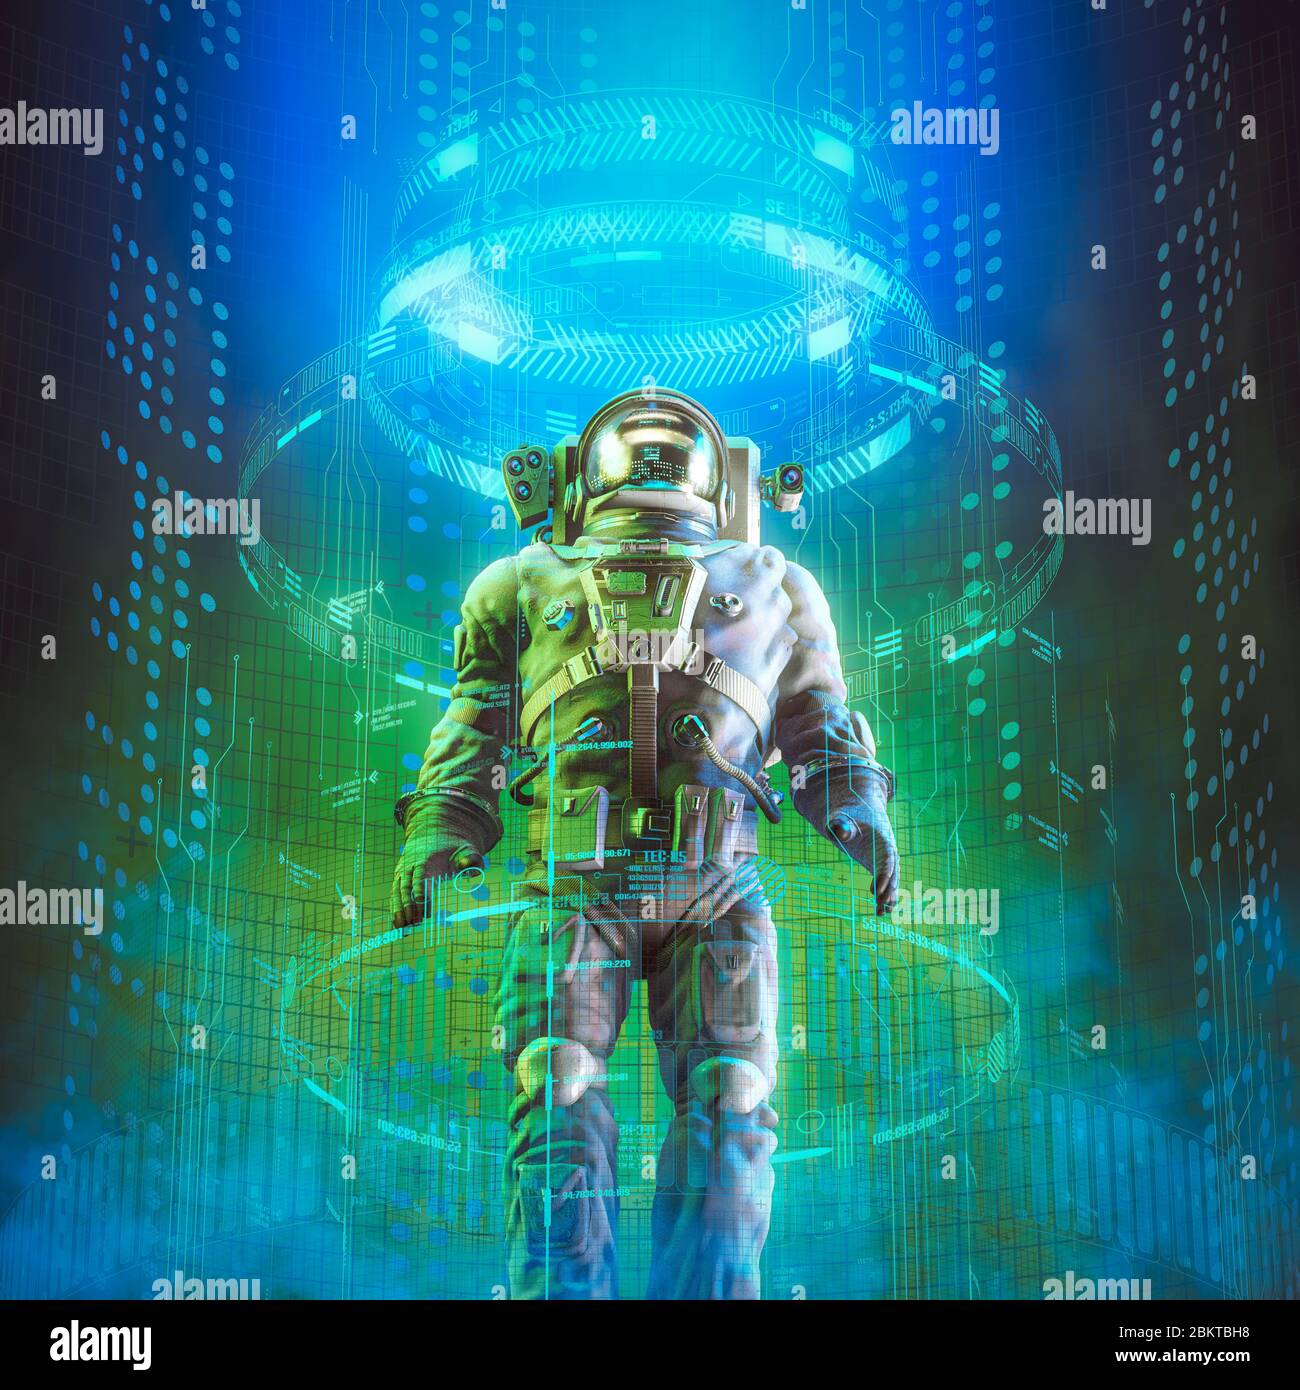 Astronaute de voyage dans le temps / illustration 3D de l'astronaute mâle à l'intérieur d'un appareil de téléportation futuriste Banque D'Images